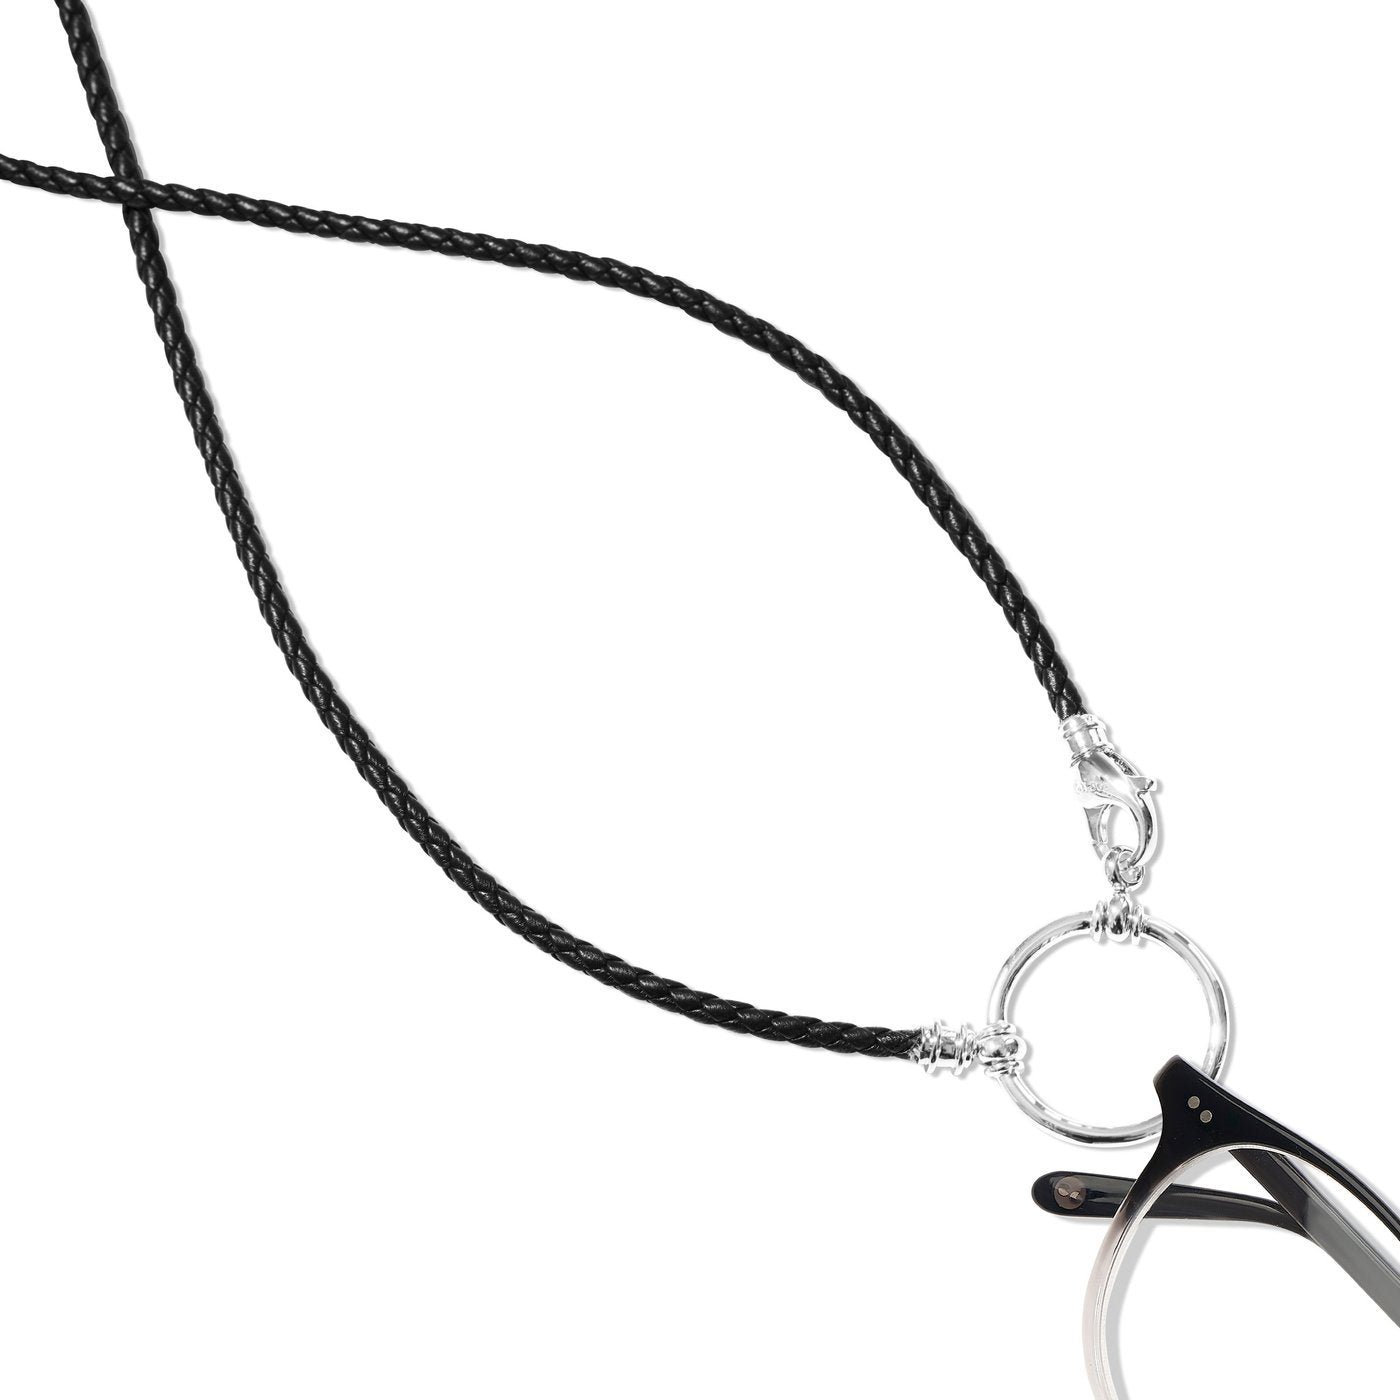 LA LOOP Italian Braided Leather Eyeglasses Chain